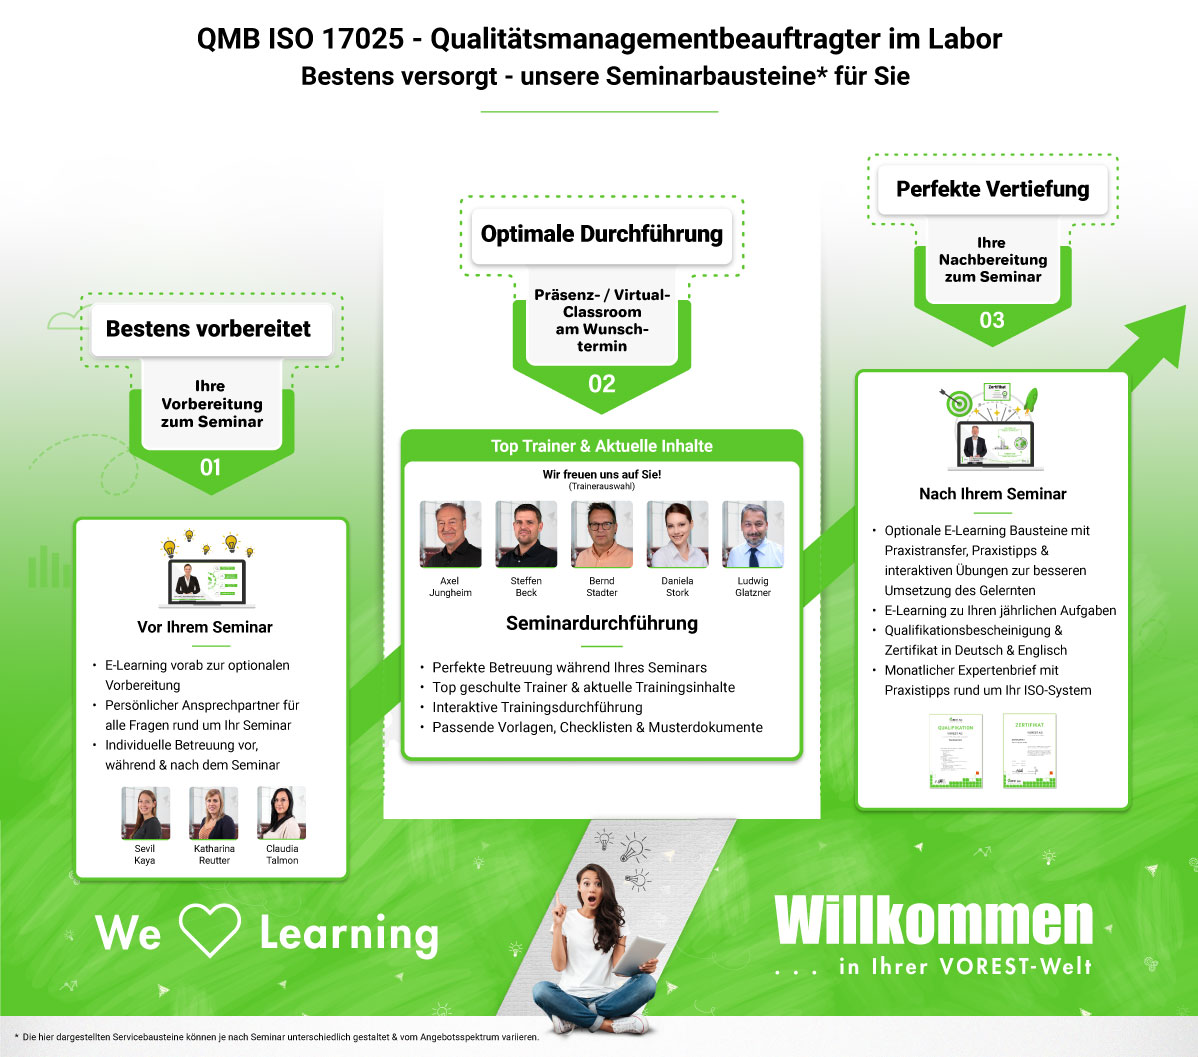 QMB ISO 17025 - Qualitätsmanagementbeauftragter im Labor